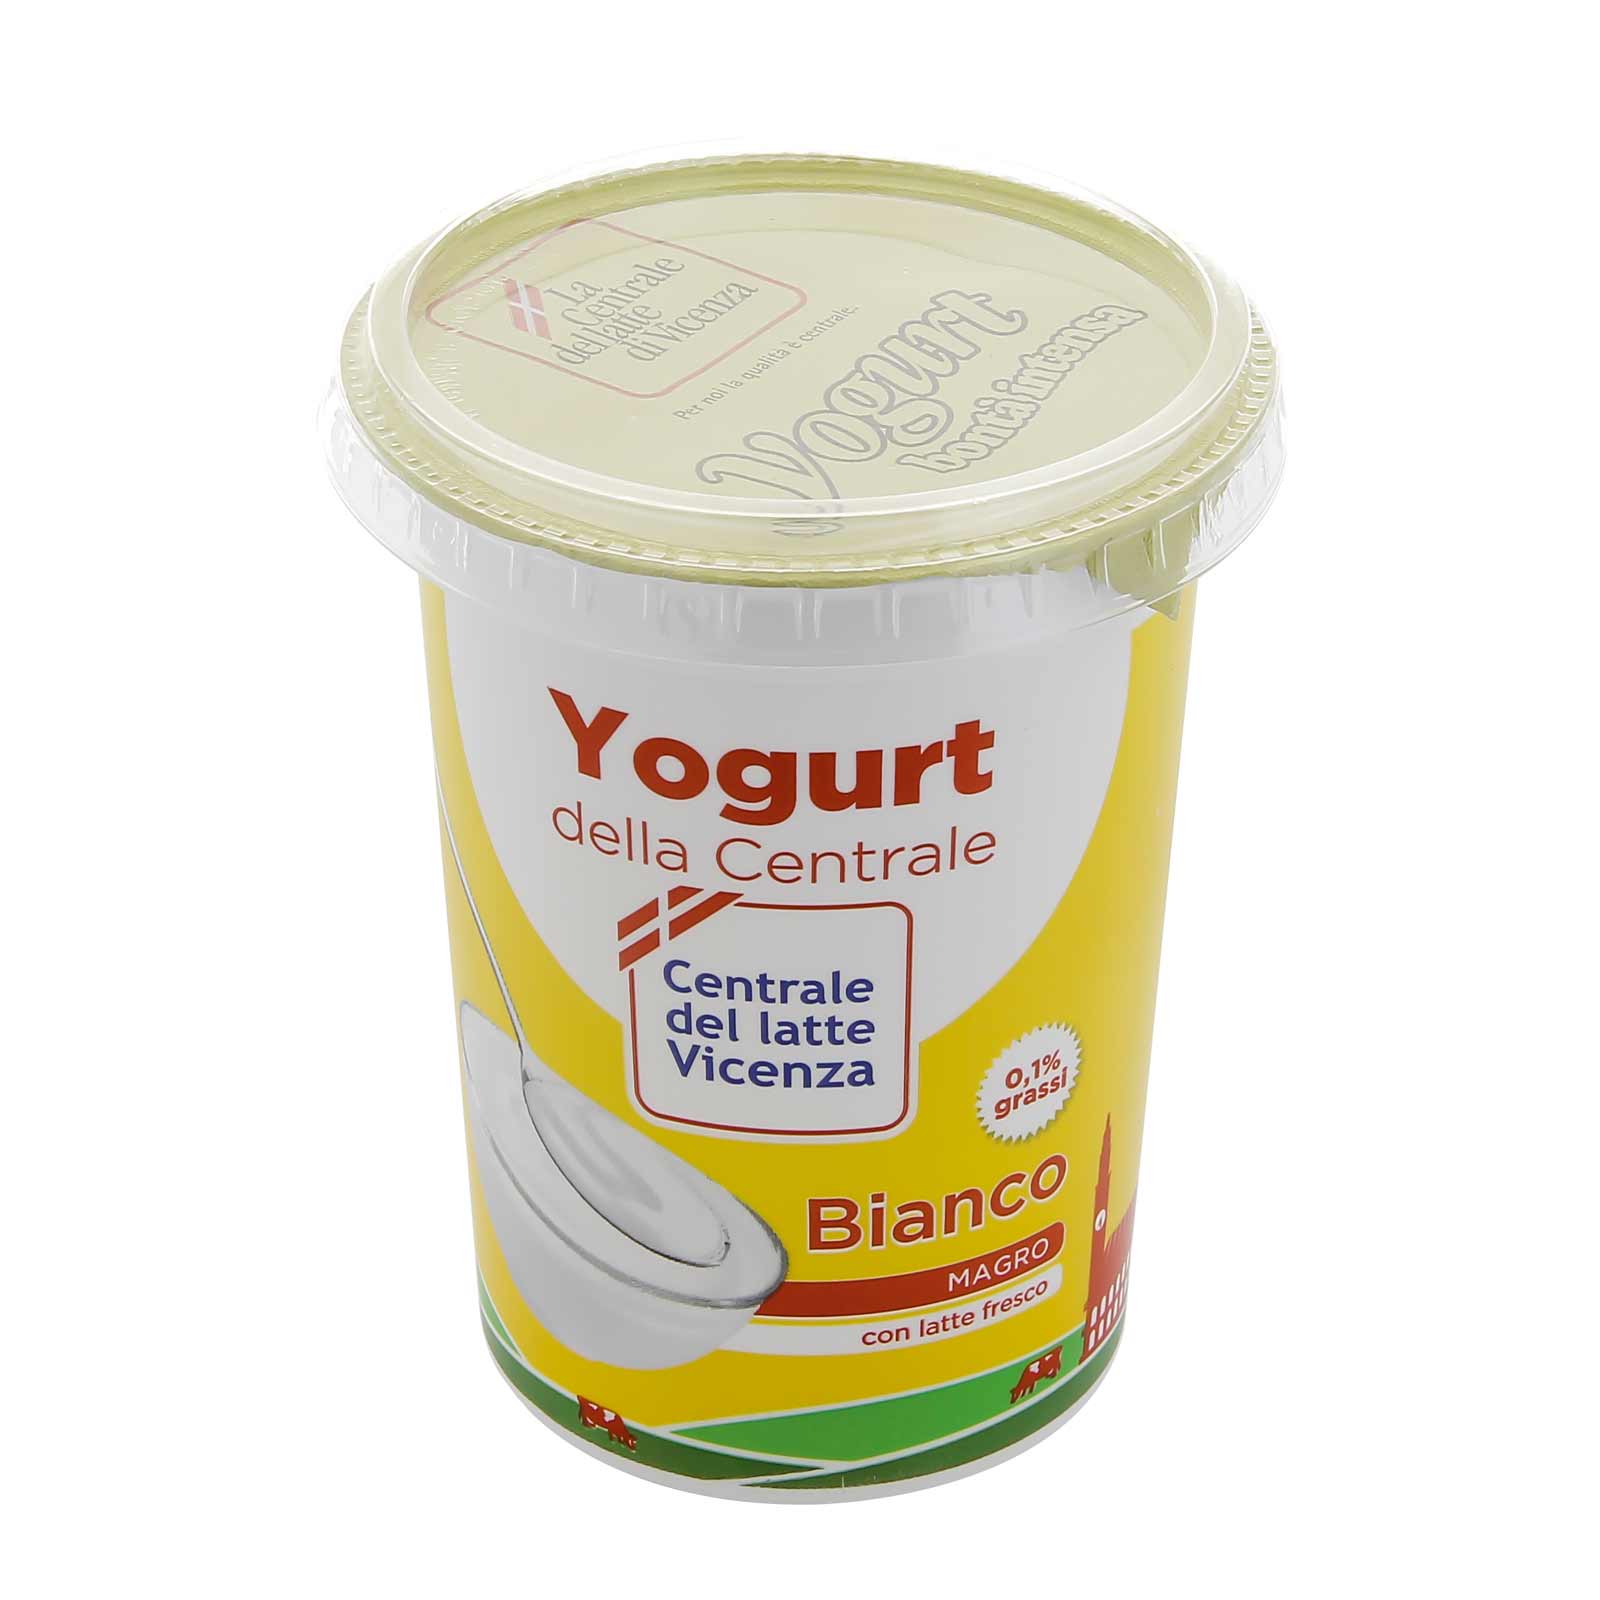 Yogurt Magro Vicenza - Bianco - Centrale del Latte di Vicenza